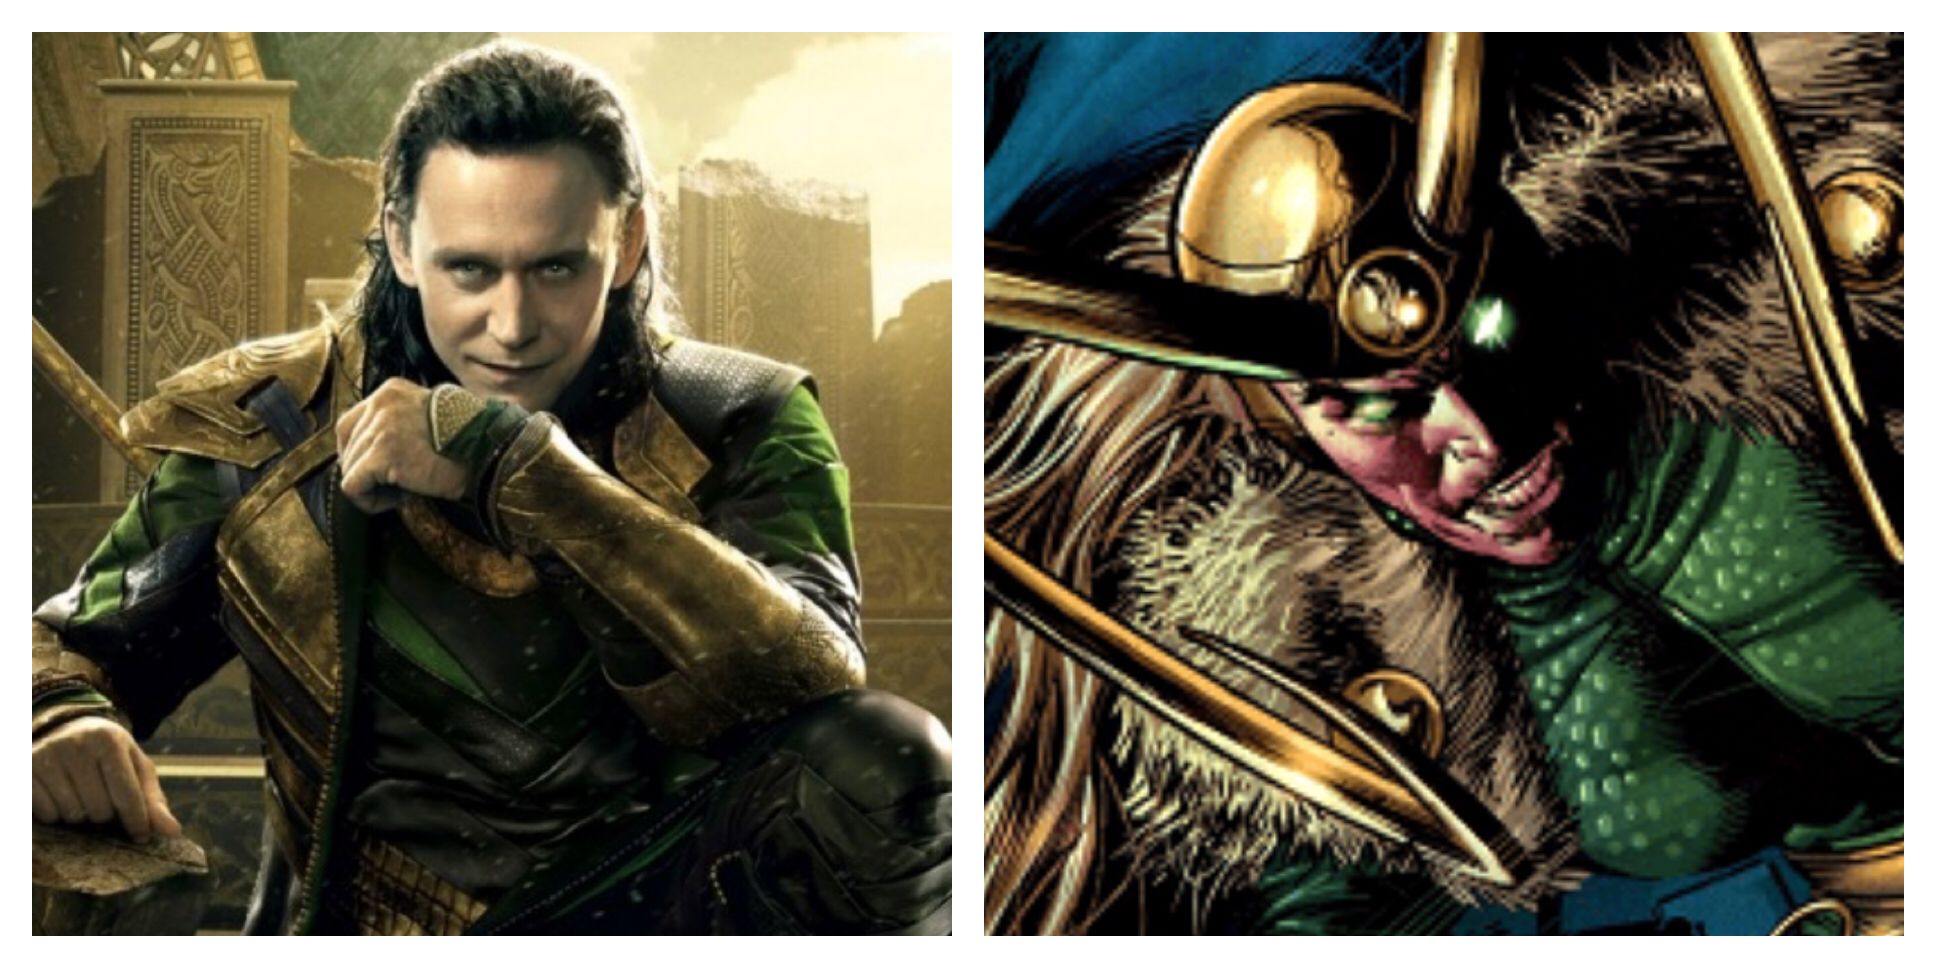 Comic Book Loki is Stronger Than MCU Loki